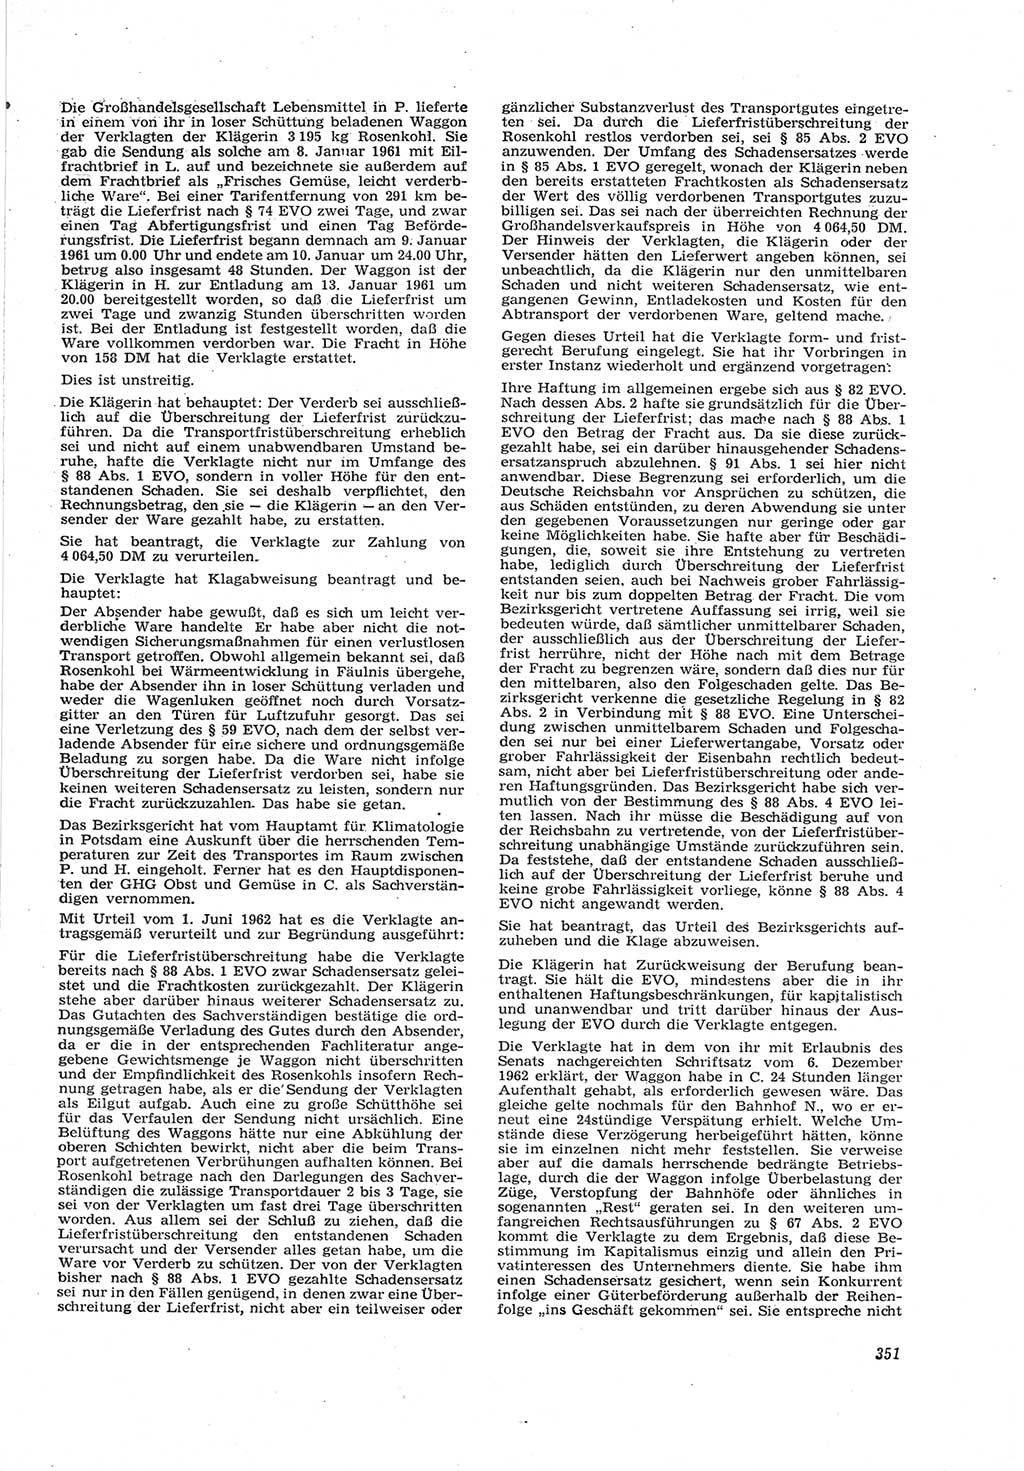 Neue Justiz (NJ), Zeitschrift für Recht und Rechtswissenschaft [Deutsche Demokratische Republik (DDR)], 17. Jahrgang 1963, Seite 351 (NJ DDR 1963, S. 351)